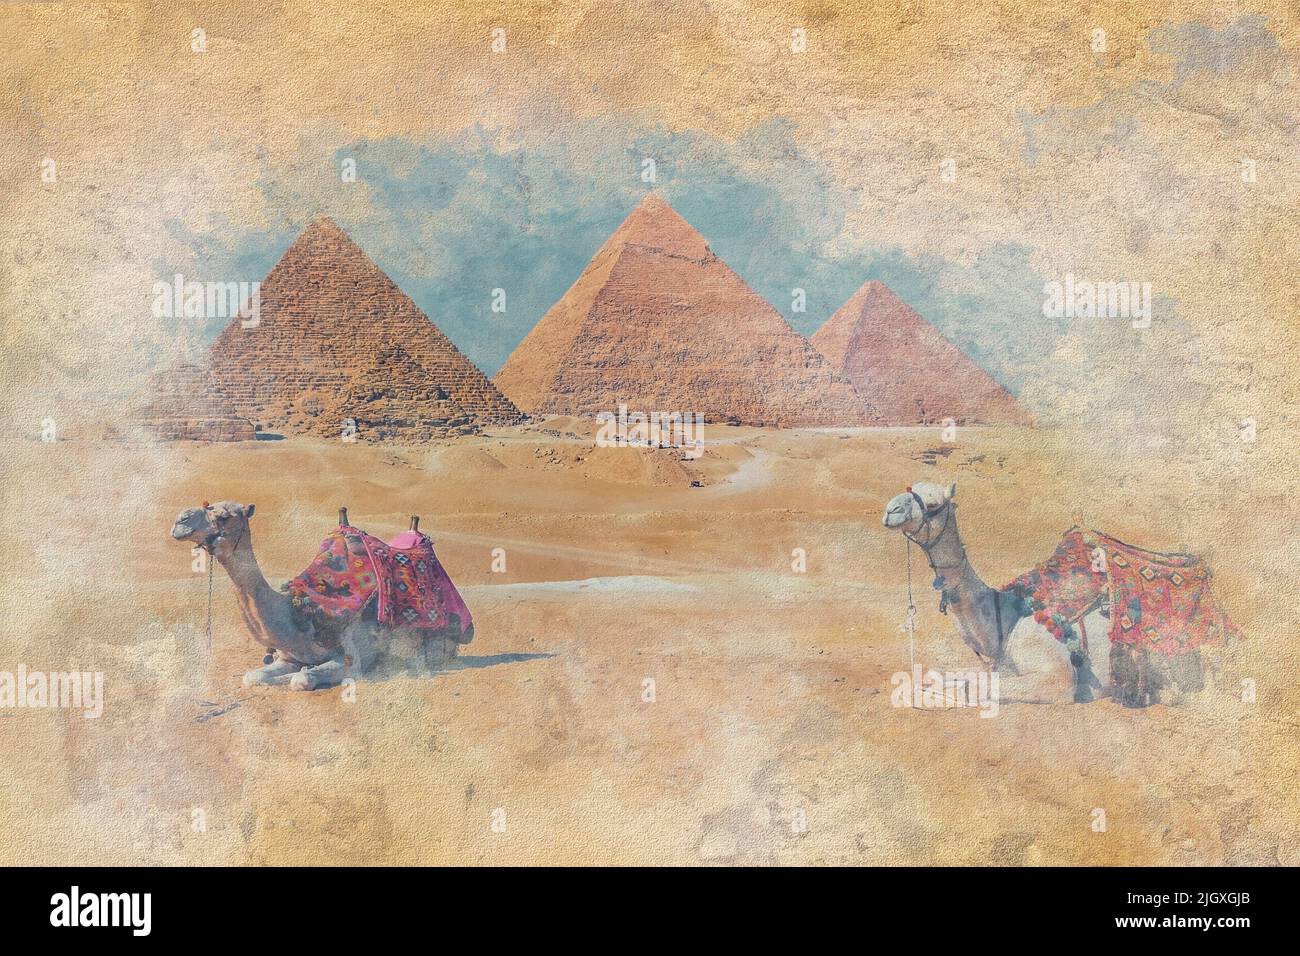 Les Pyramides de Gizeh en Egypte - Illustration de l'effet d'aquarelle Banque D'Images